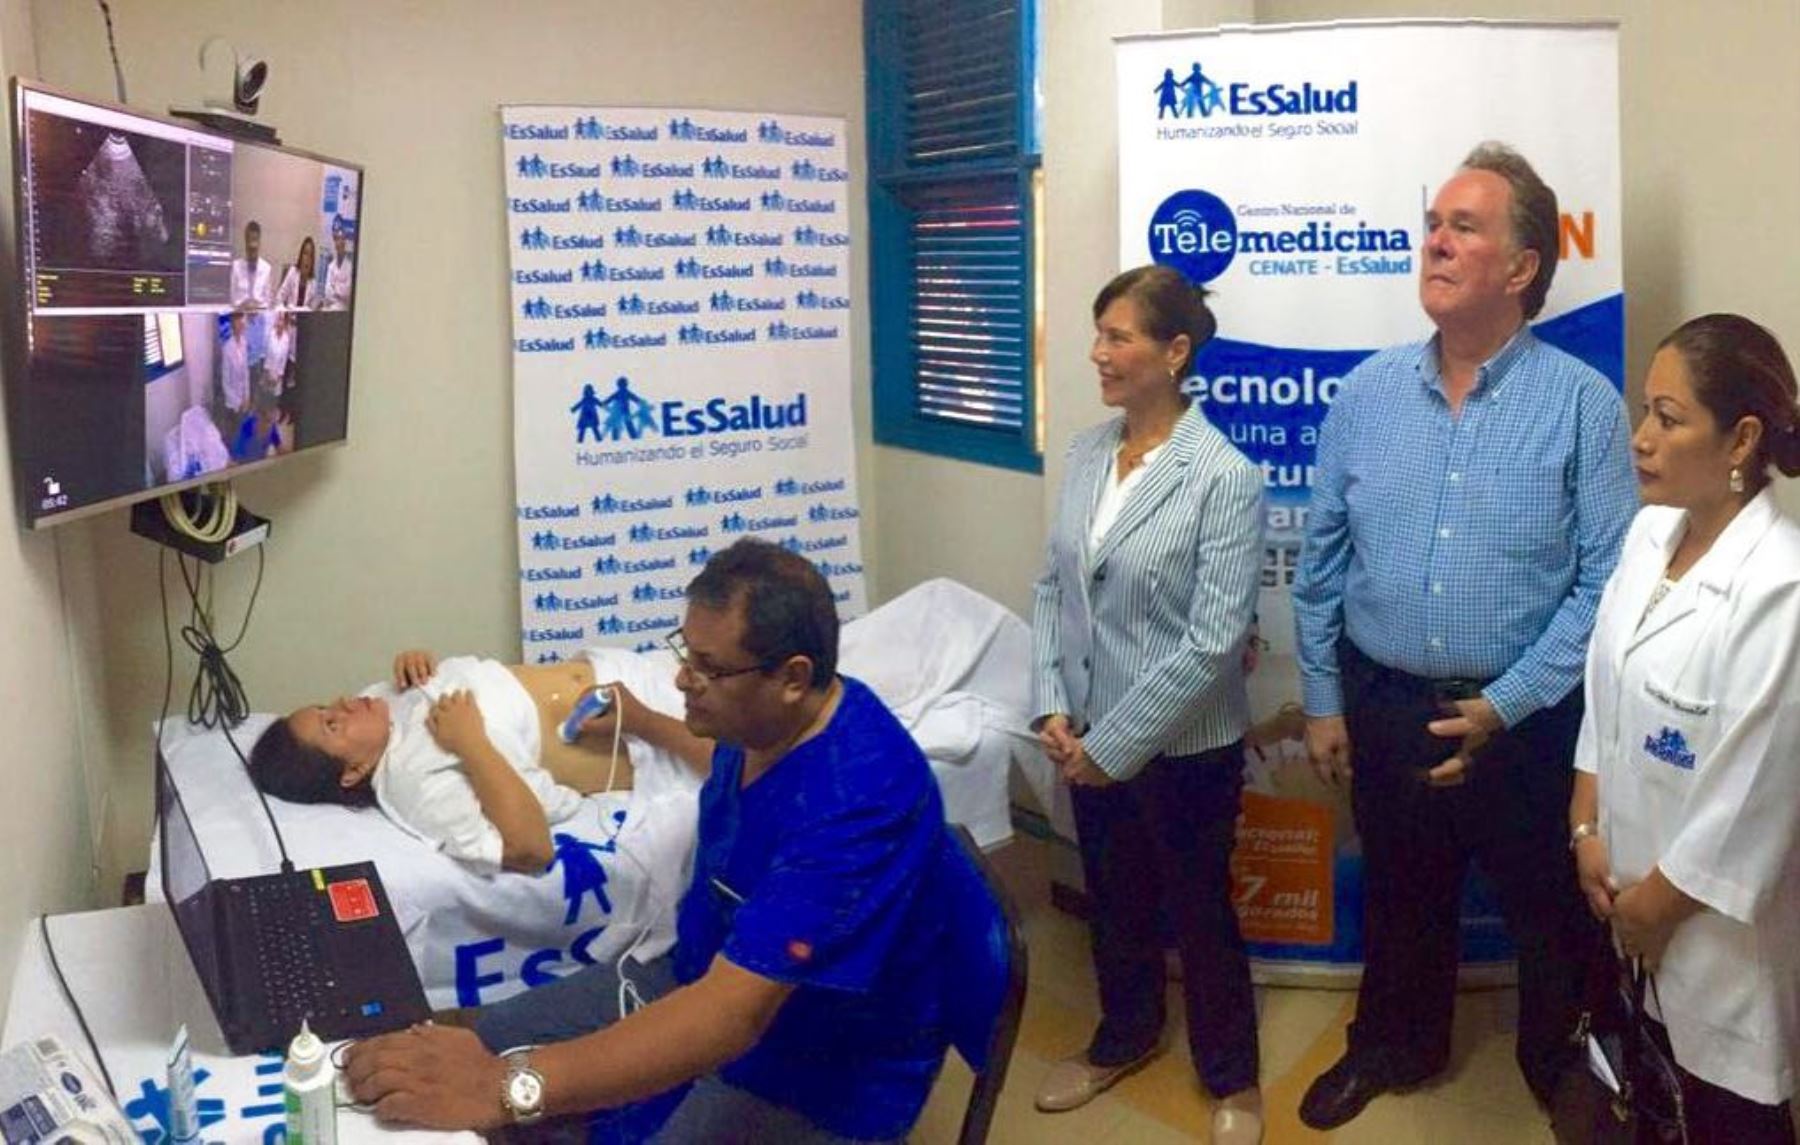 EsSalud inauguró servicio de telemedicina en Hospital de Jaén. Equipos fueron entregados por el Plan Binacional Perú-Ecuador, Capítulo Perú.